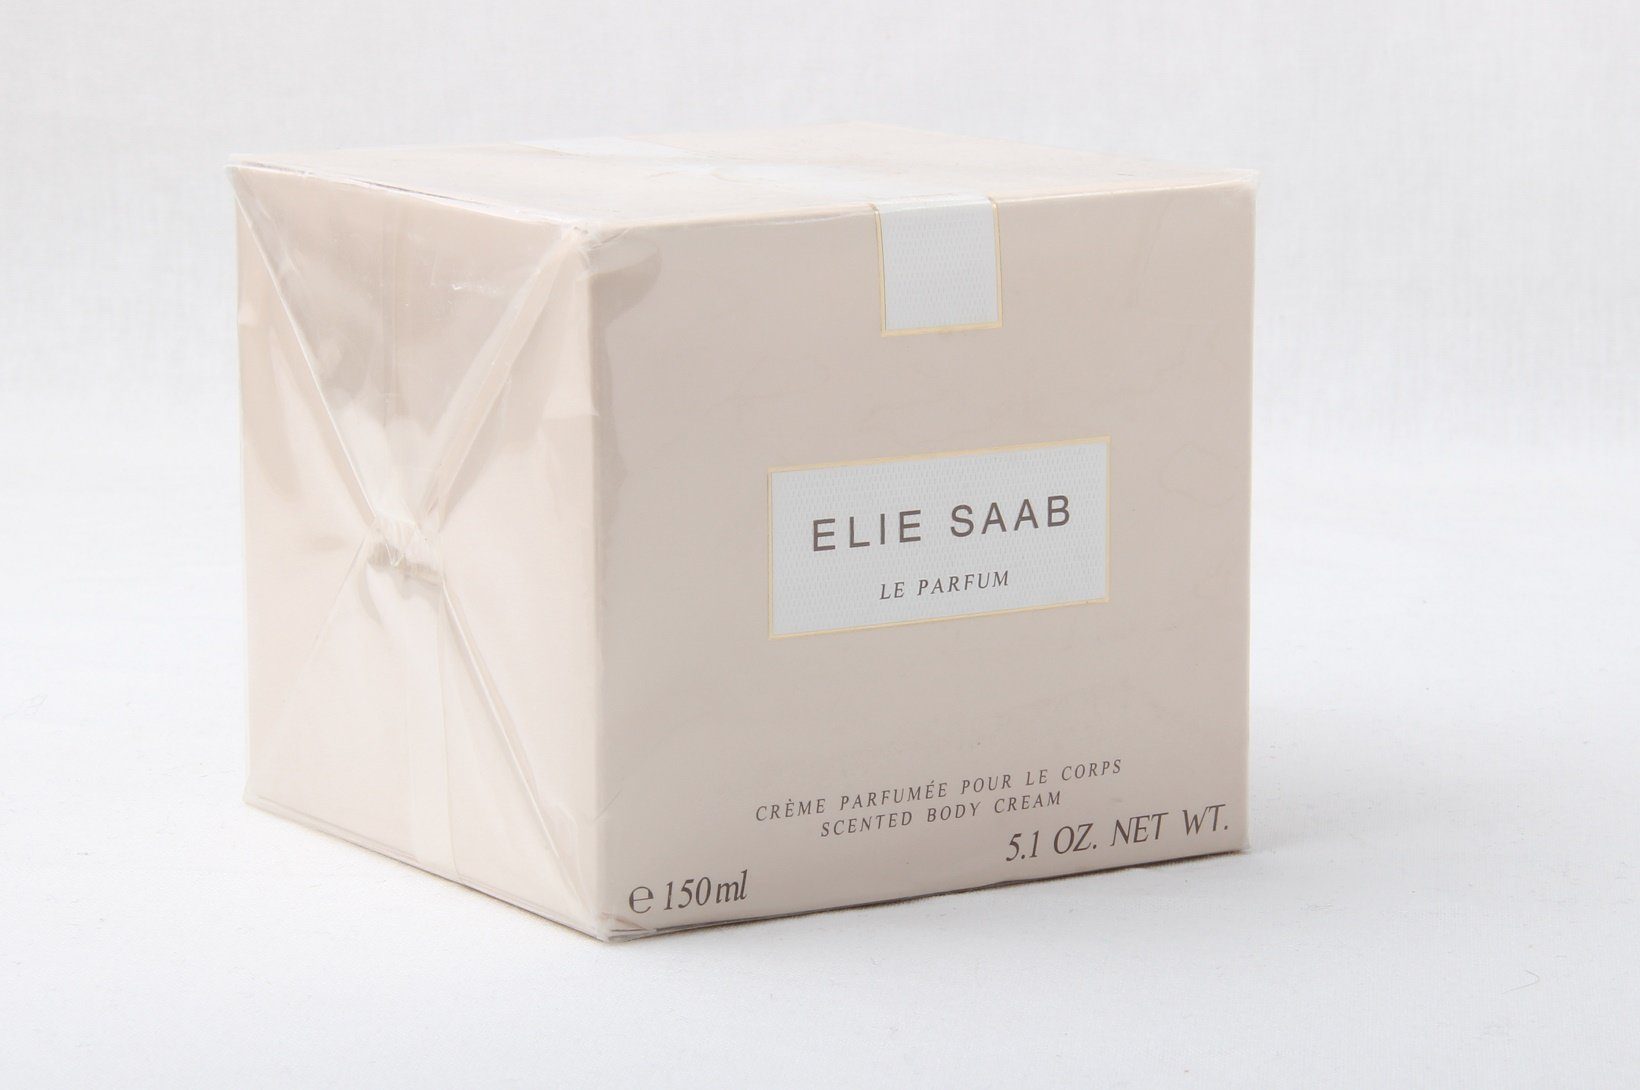 ELIE SAAB Körpercreme Elie Saab Le Parfum Body Creme 150ml